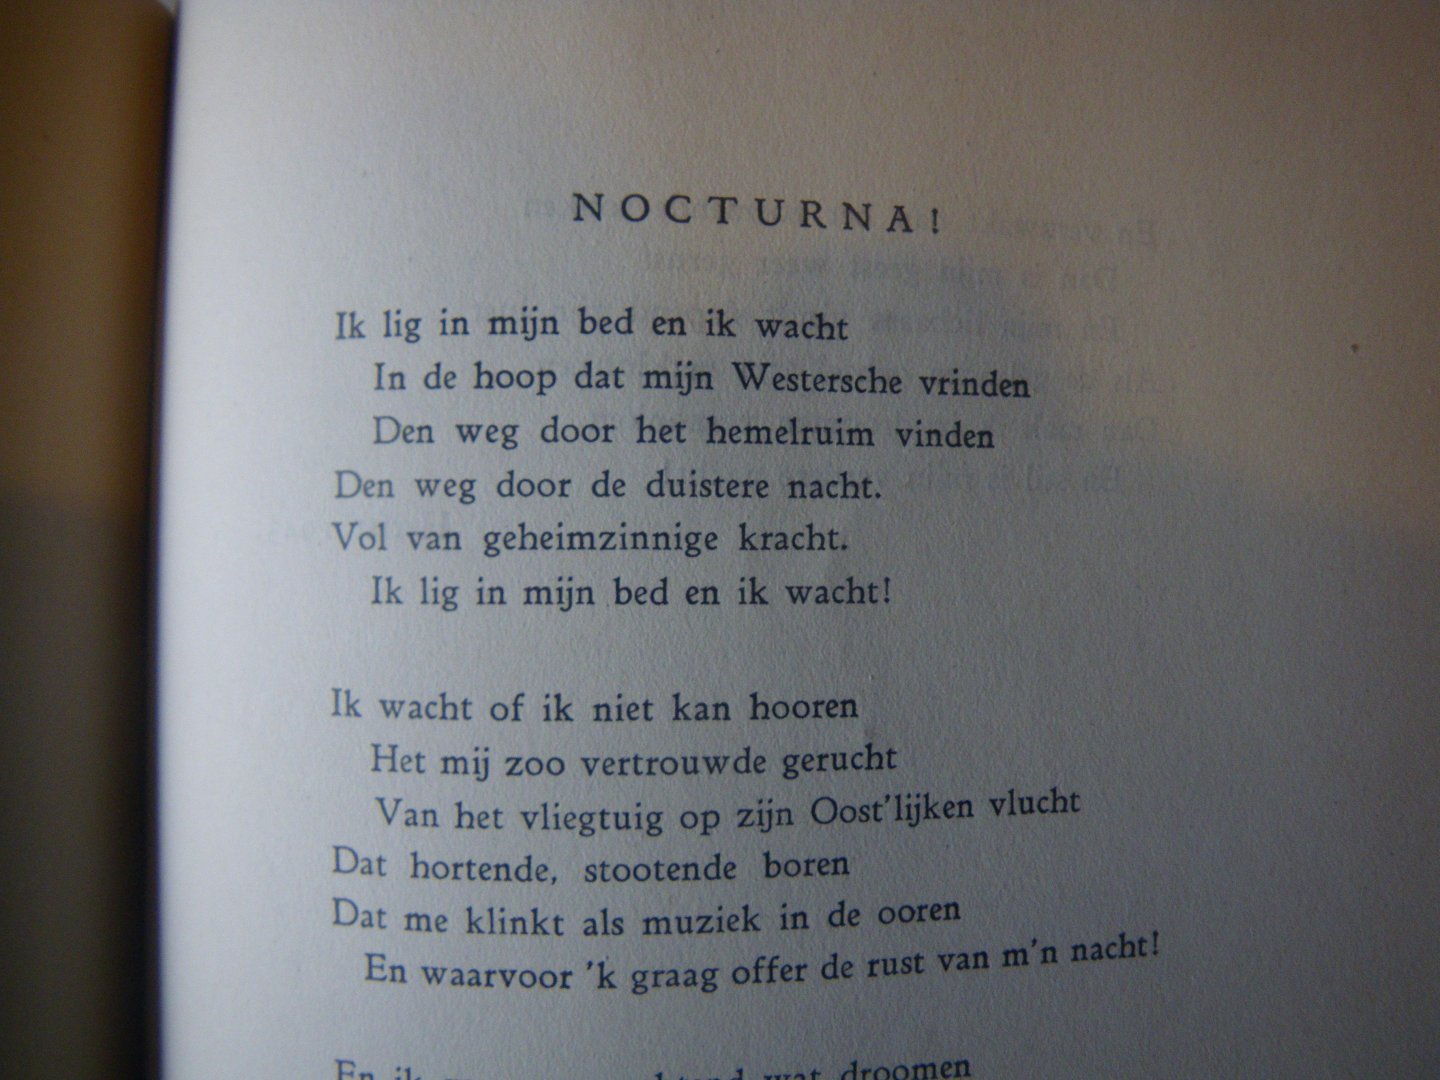 LUCARDIE, A.J.E. - Rijmkroniek - WERELDOORLOG 1940-1945 ( gedichten m.b.t. WO-II en Den Haag )